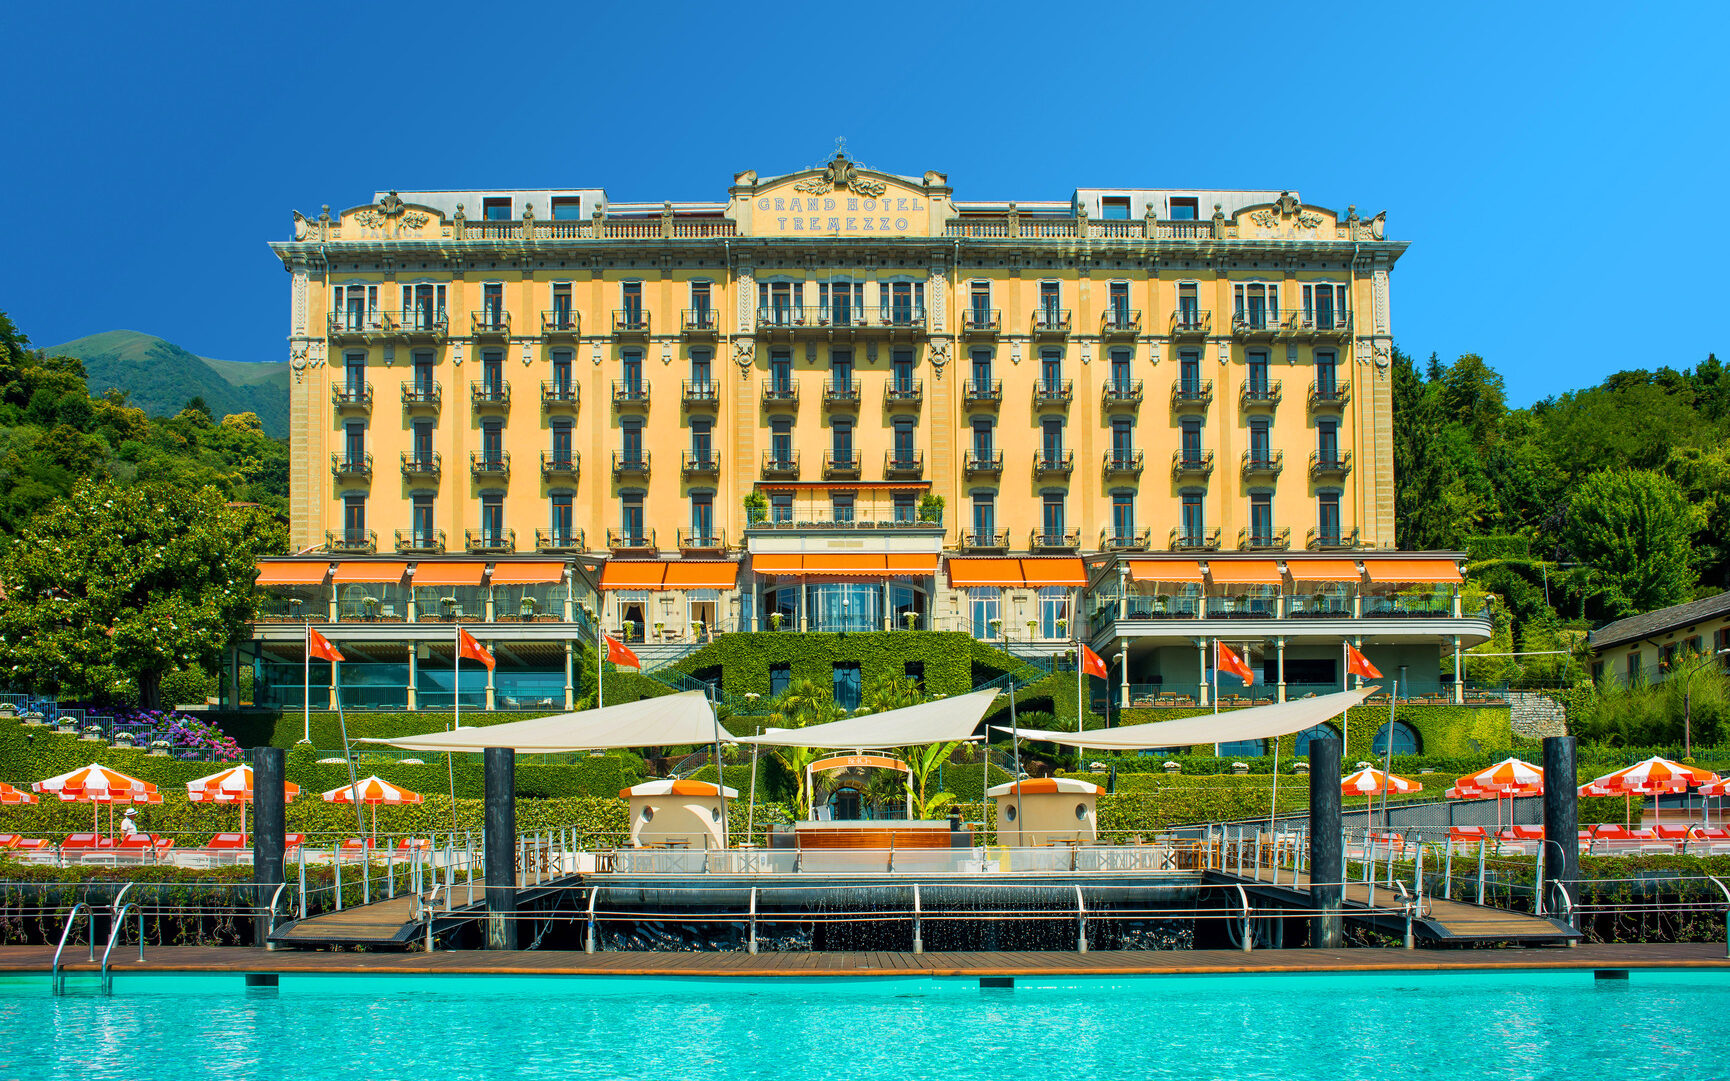 Hotel Review: Grand Hotel Tremezzo (Lake Como)